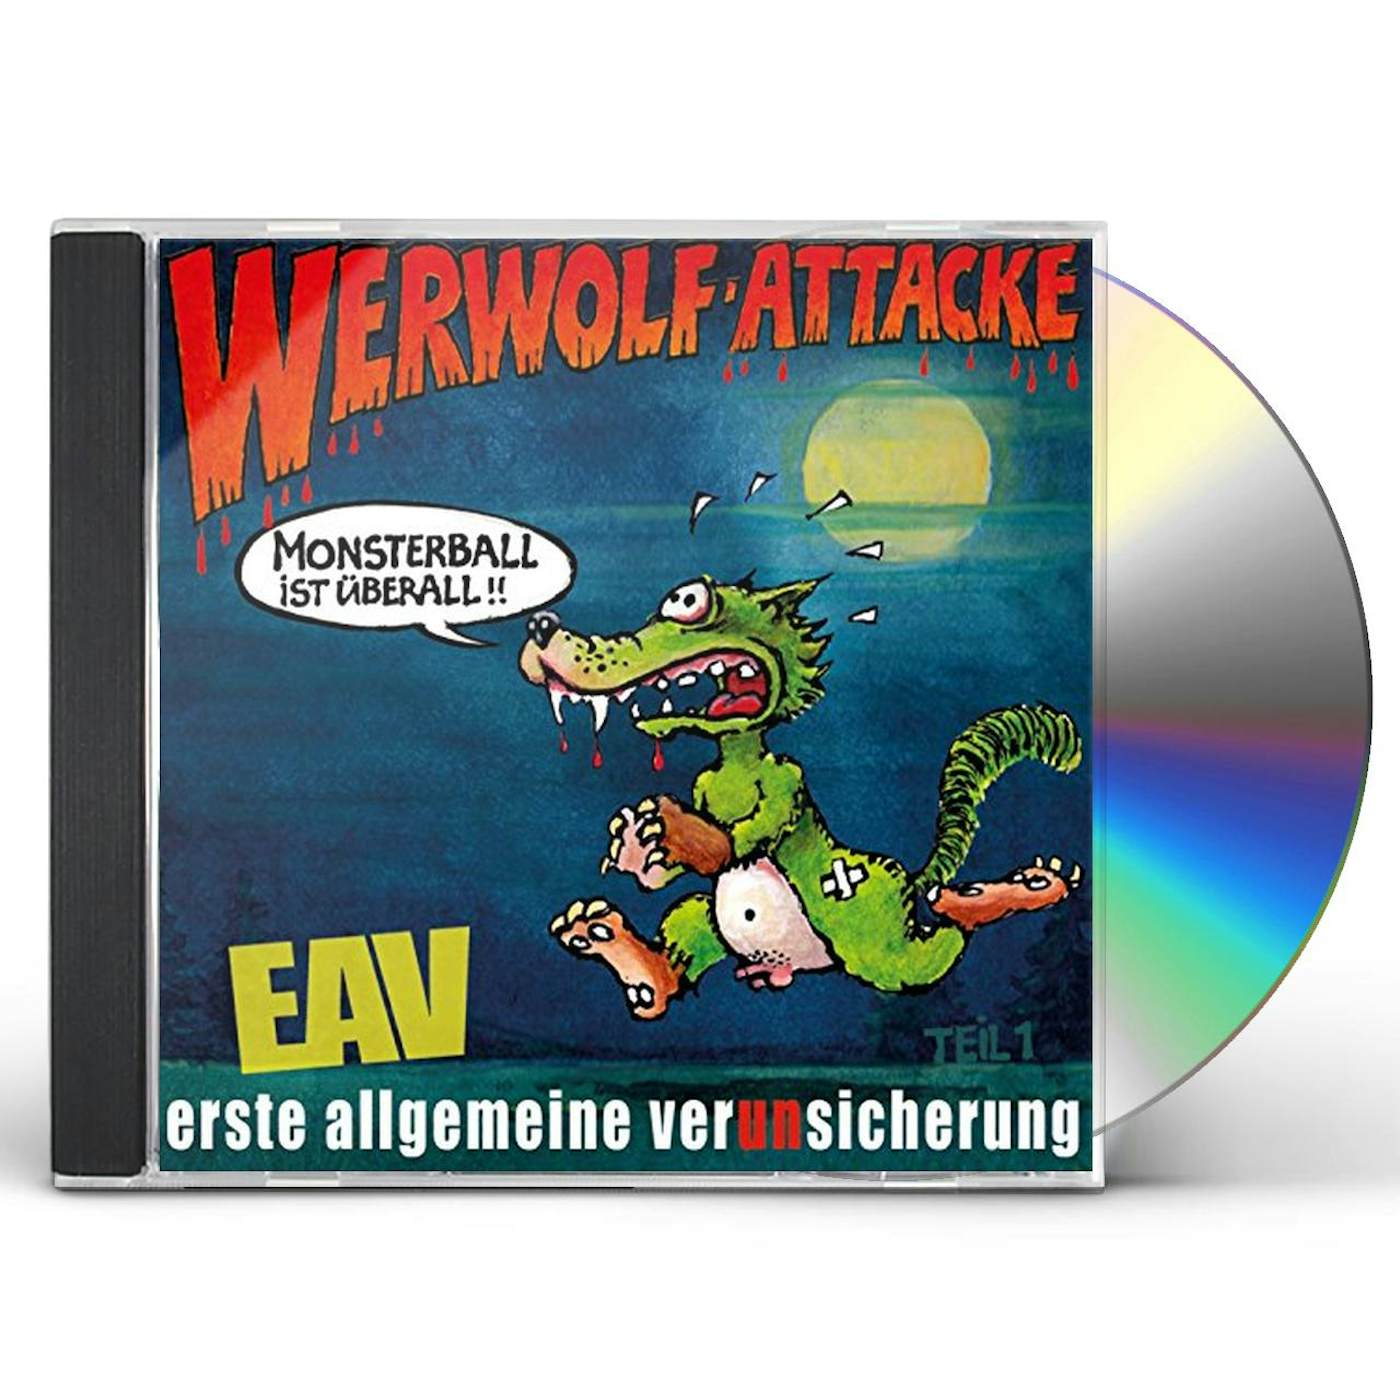 EAV WERWOLF-ATTACK CD